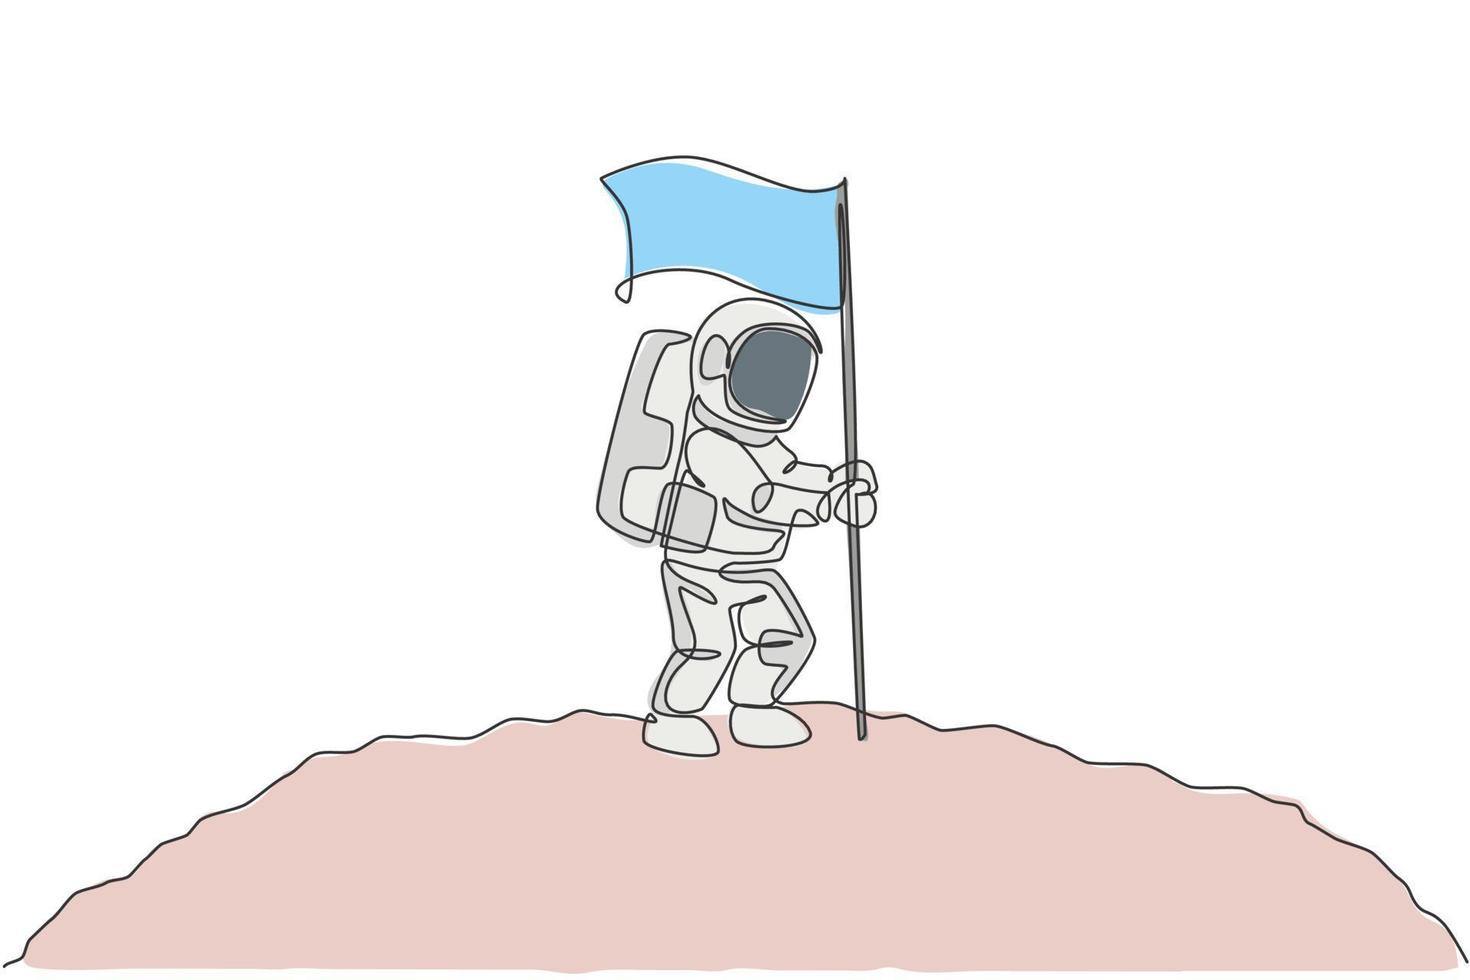 en enda radritning av rymdman astronaut som utforskar kosmisk galax och planterar flagga på månytan vektorillustration. fantasi yttre rymden liv fiktion koncept. kontinuerlig linje ritning design vektor